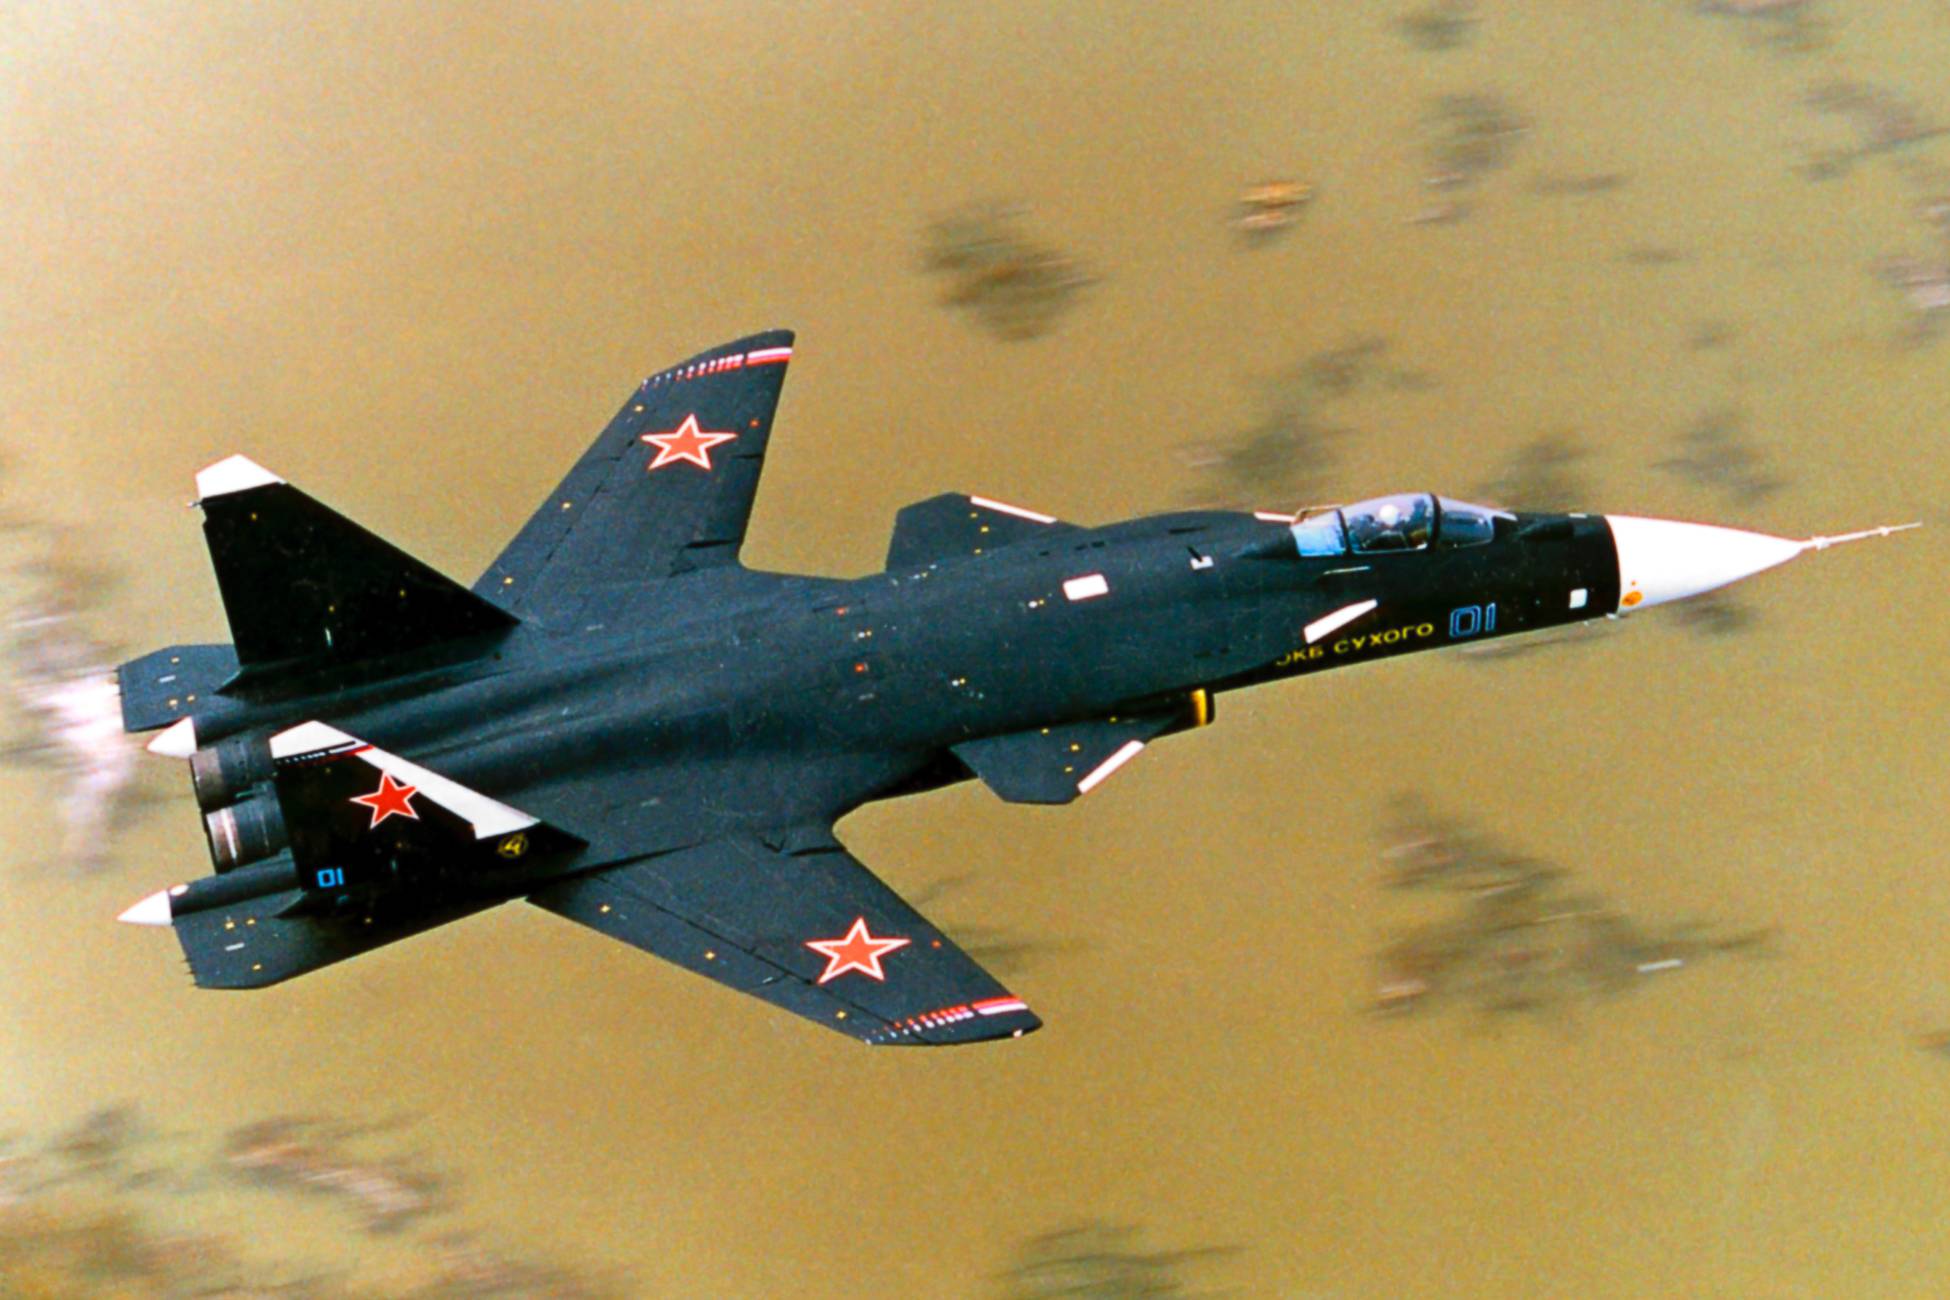 Самолет с обратной стреловидностью крыла су-47: беркут, истребители 6 поколения россии, скорость, характеристики